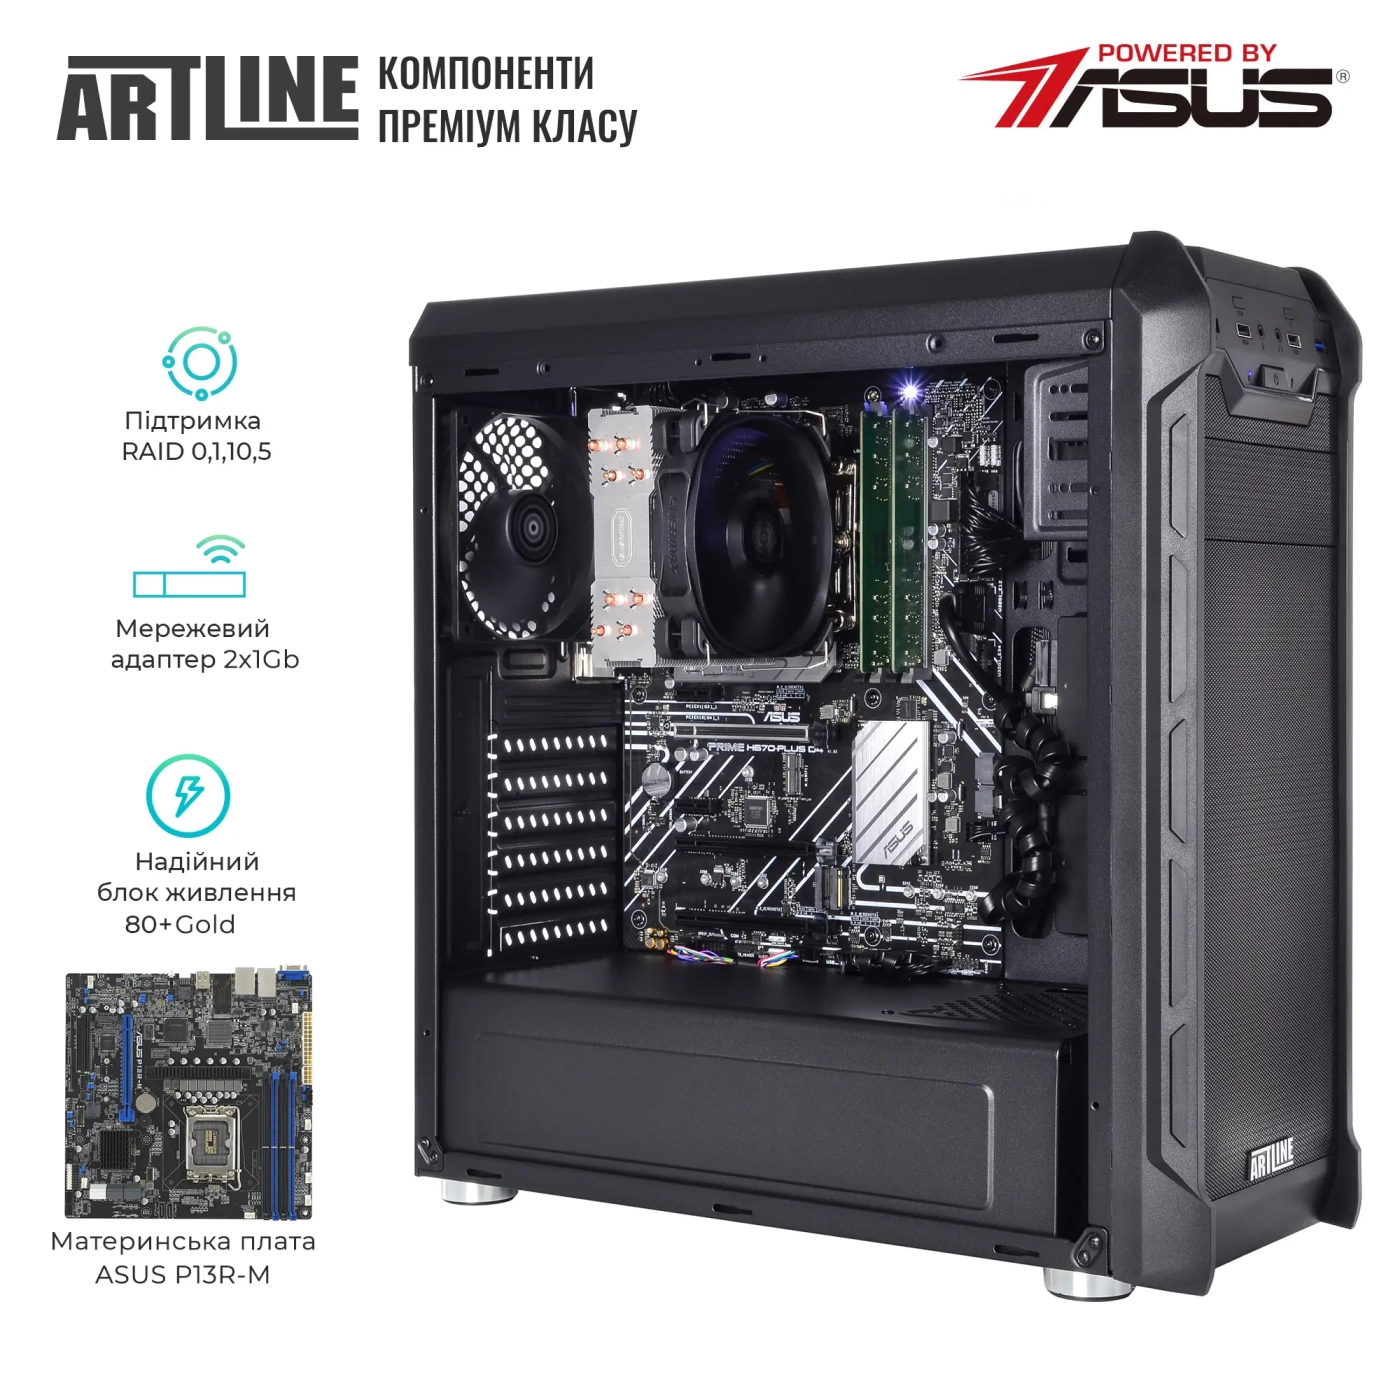 Купить Сервер ARTLINE Business T25 (T25v44) - фото 2